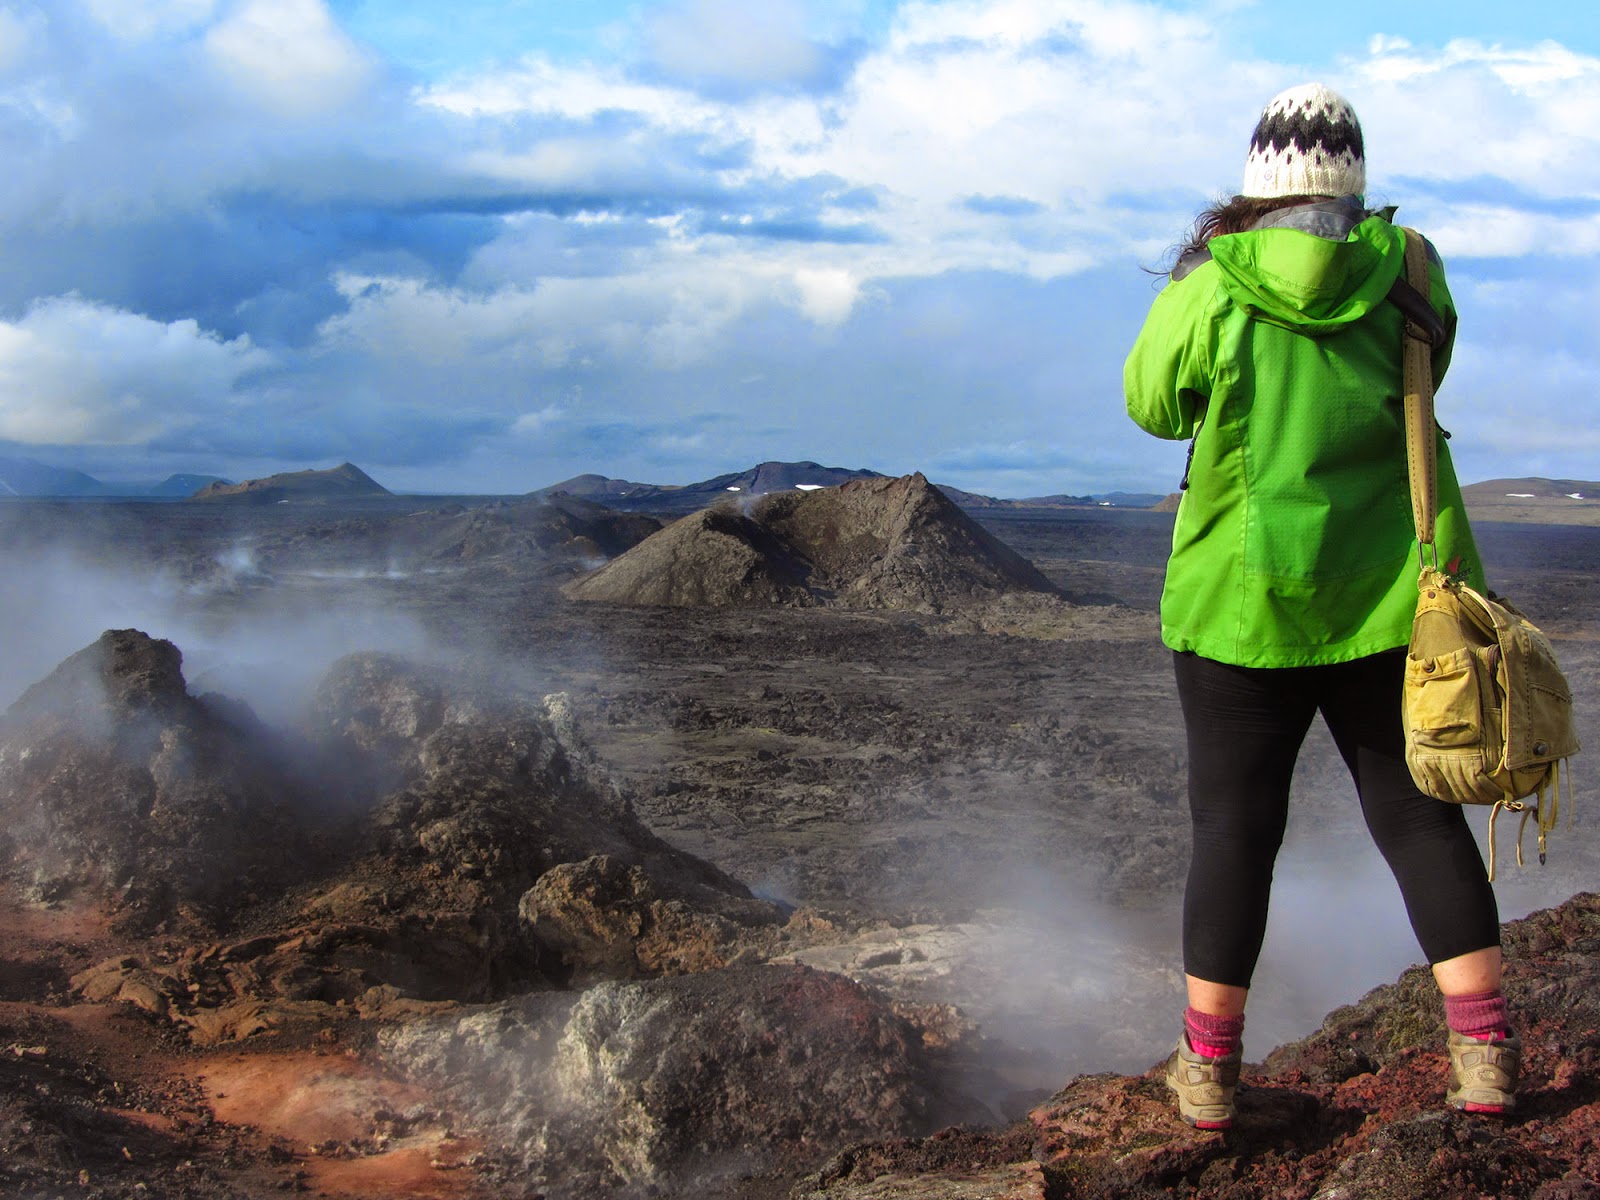 Visitar KRAFLA, uma viagem à terra dos vulcões e fumarolas islandesas | Islândia